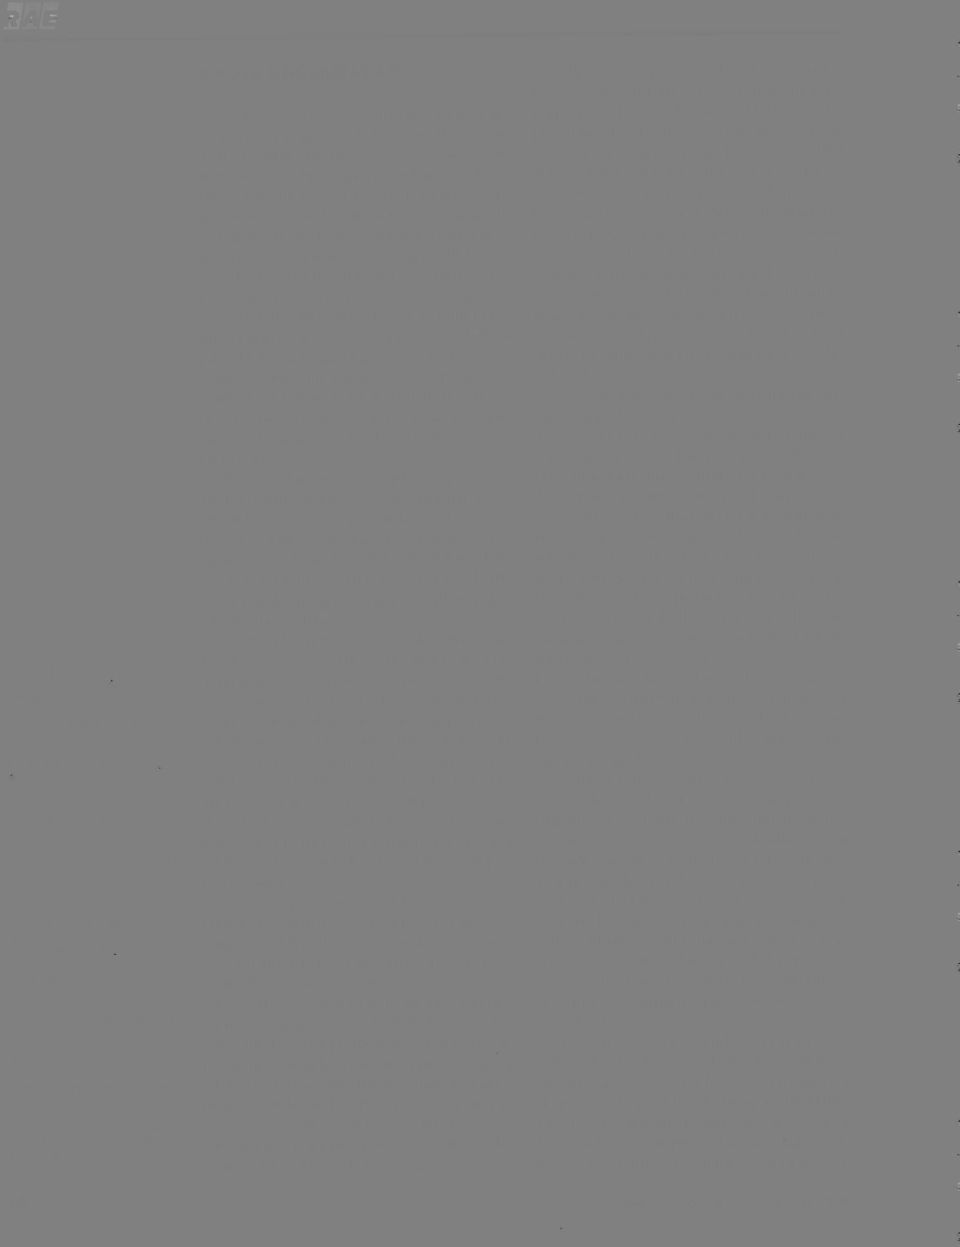 In: GONÇALVES, José Ernesto Lima Gonçalves, DREYFUSS, Cassio. Reengenharia das empresas: passando a limpo. Atlas, 1995; TAPSCOn, Don, CASTON, Art. Mudança de paradigma. São Paulo: Makron, 1995. 47.